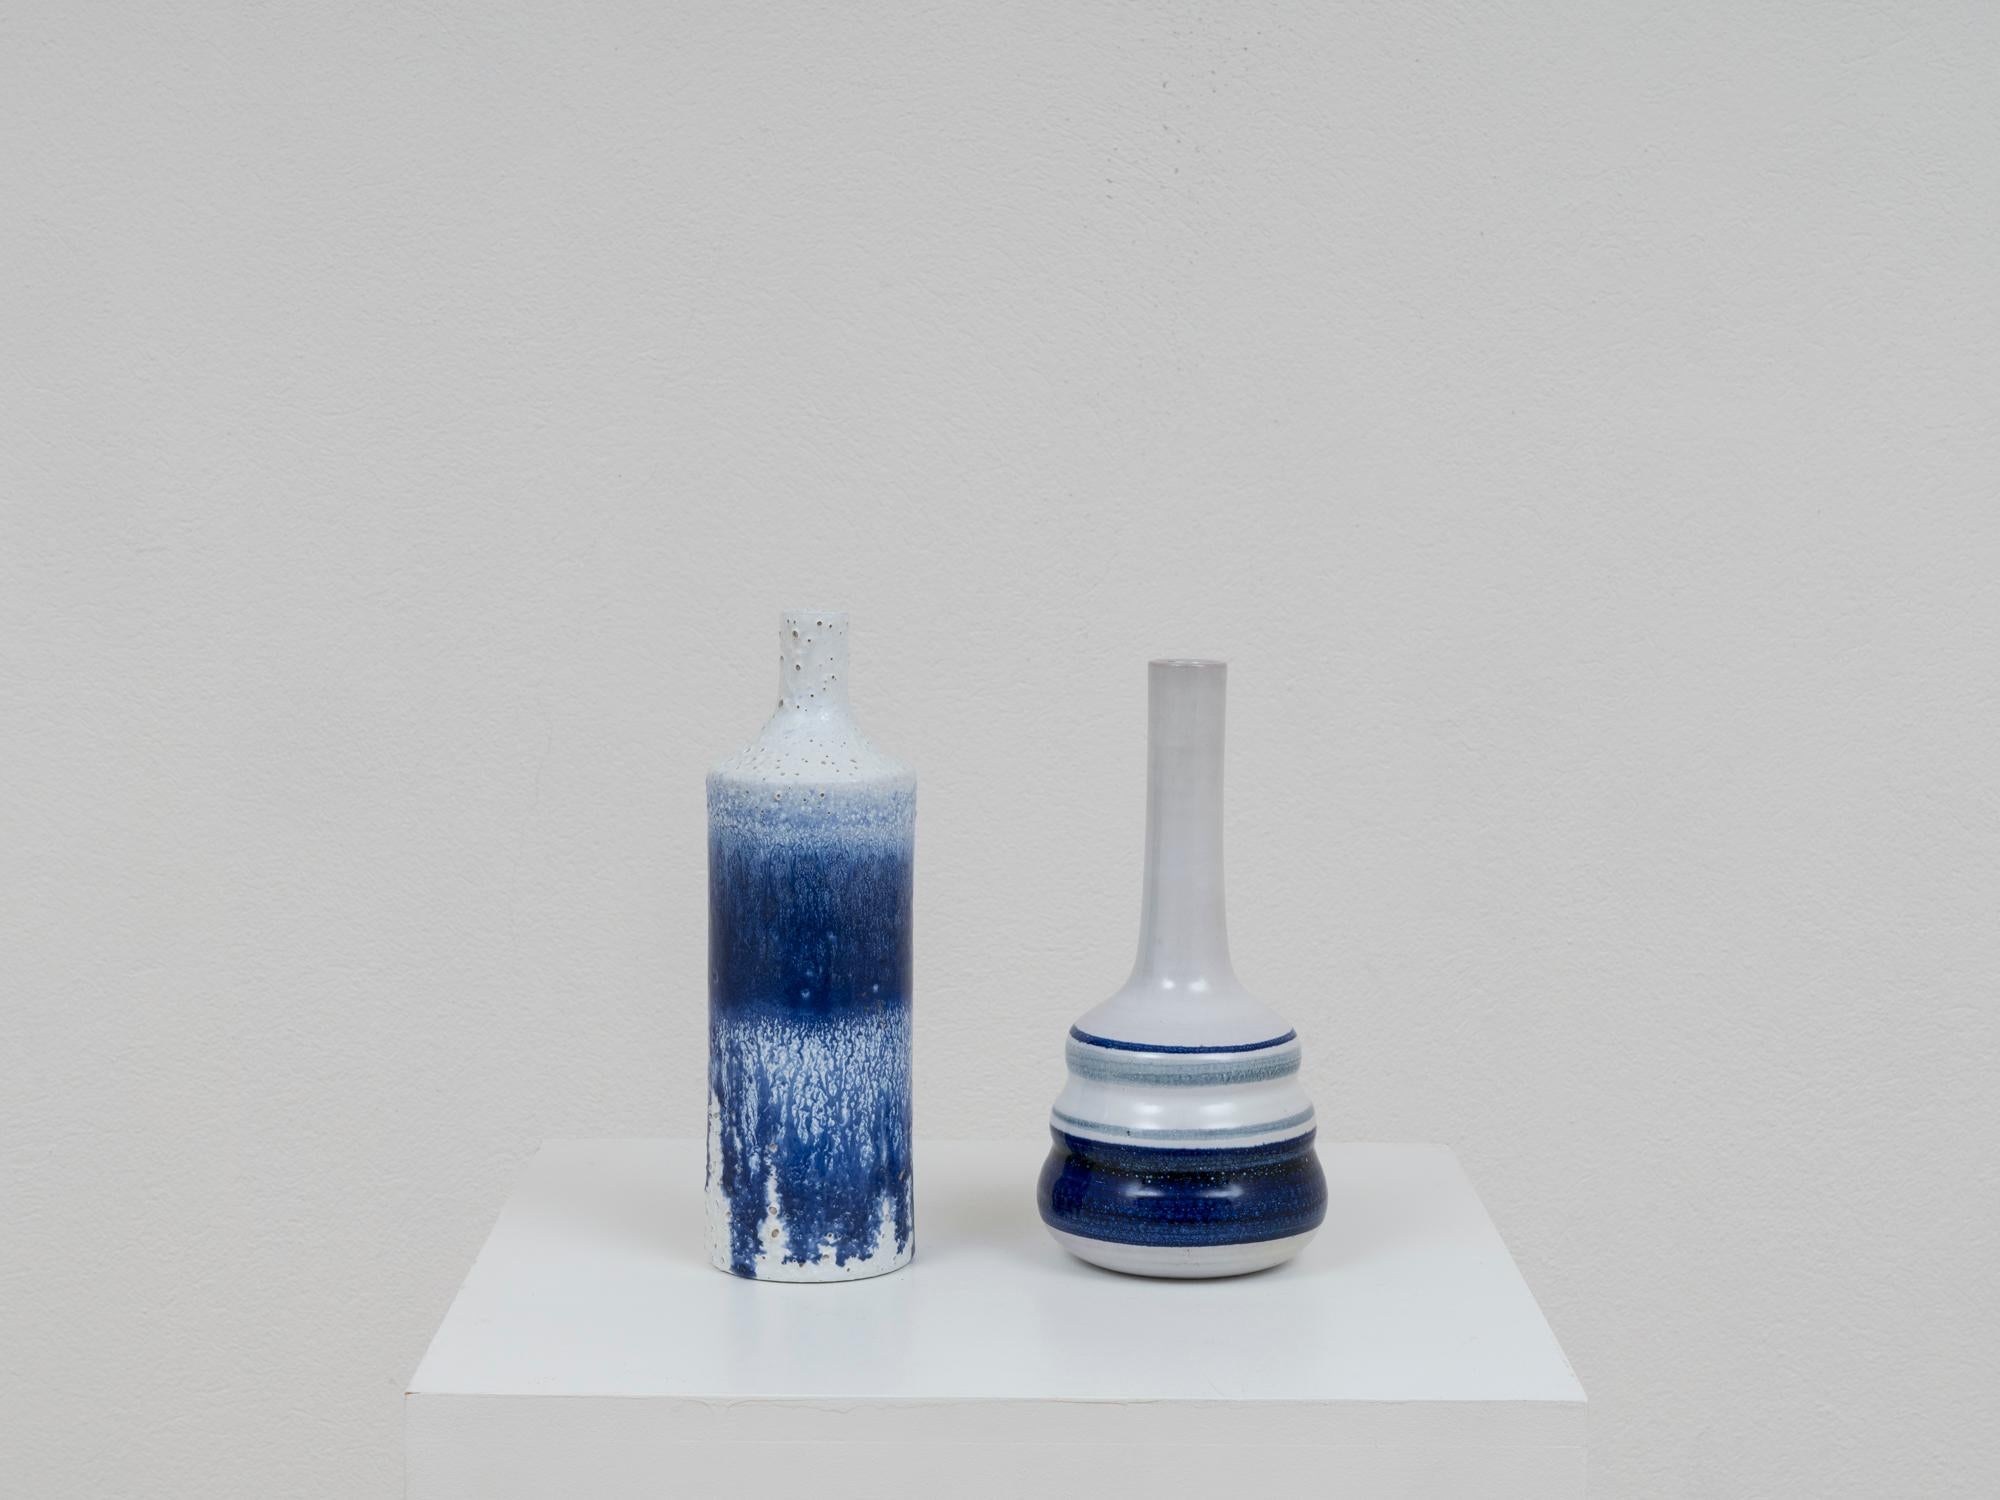 Paar Flaschenvasen aus Keramik von Pino Castagna, mit blauem und weißem Dekor mit starkem mediterranem Touch. Emaille-Tropfen und taktile Veredelung an einer Flasche. Diese Stücke wurden in den 1990er Jahren im Labor des Künstlers in Costermano, in